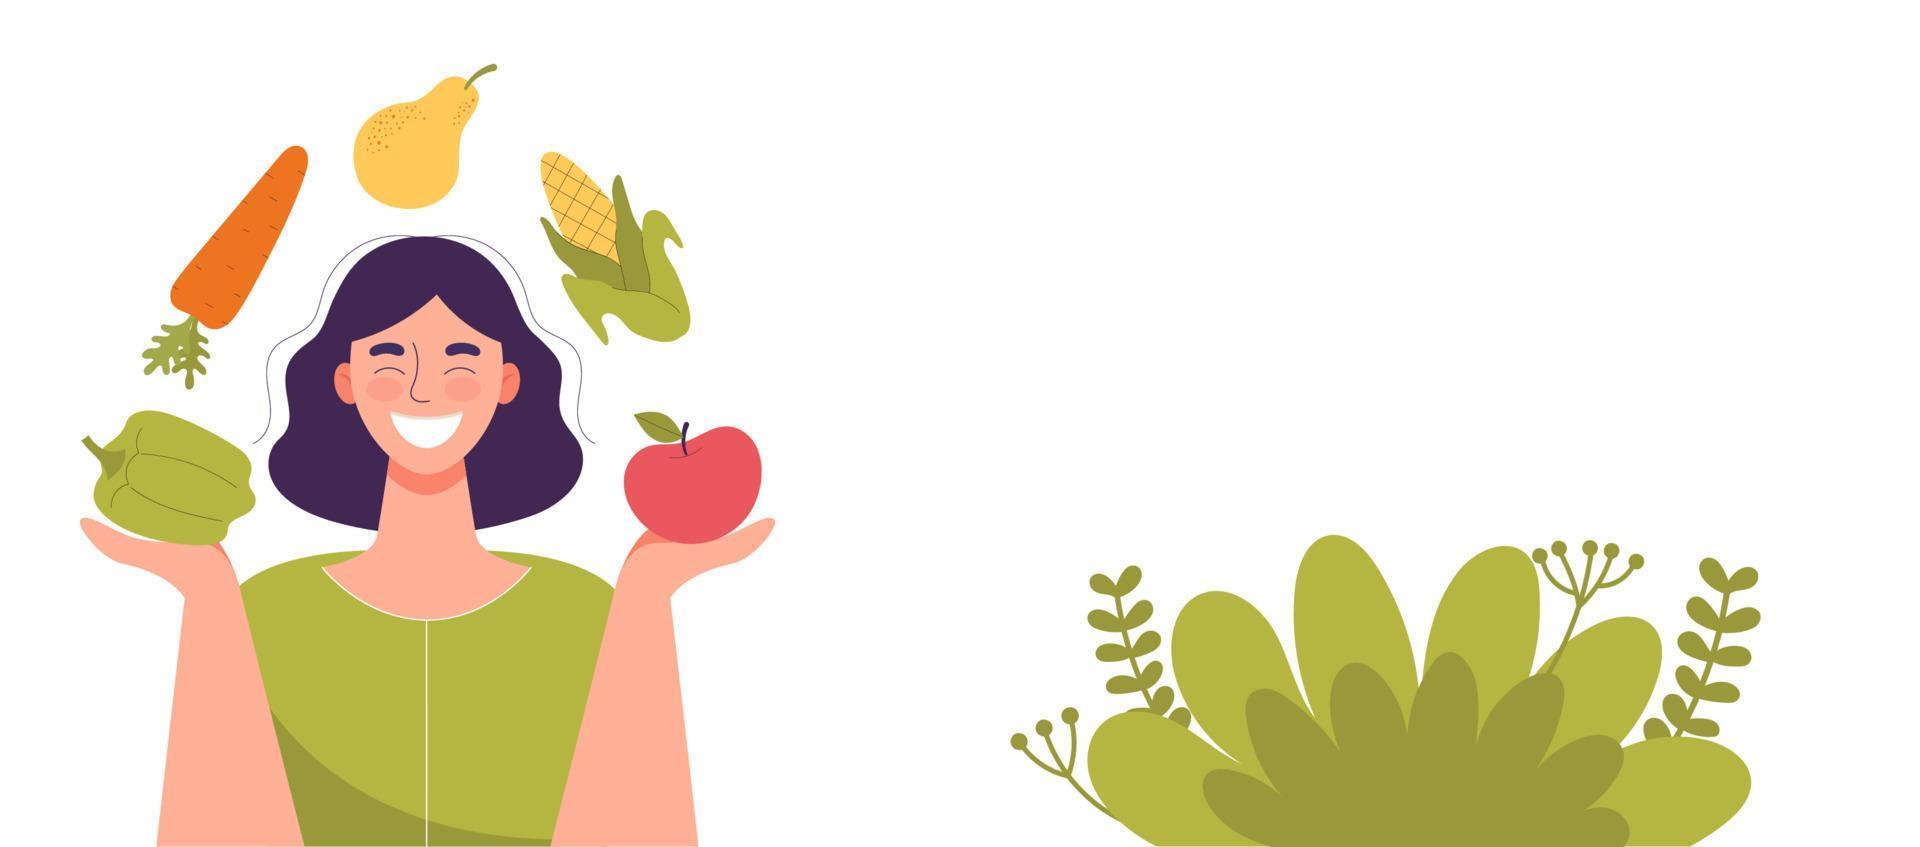 donna sorridente con frutta e verdura nelle sue mani cibo sano, concetto di dieta, dieta di cibi crudi, vegetariano banner per sito web, spazio per testo, template.flat cartoon illustrazione vettoriale